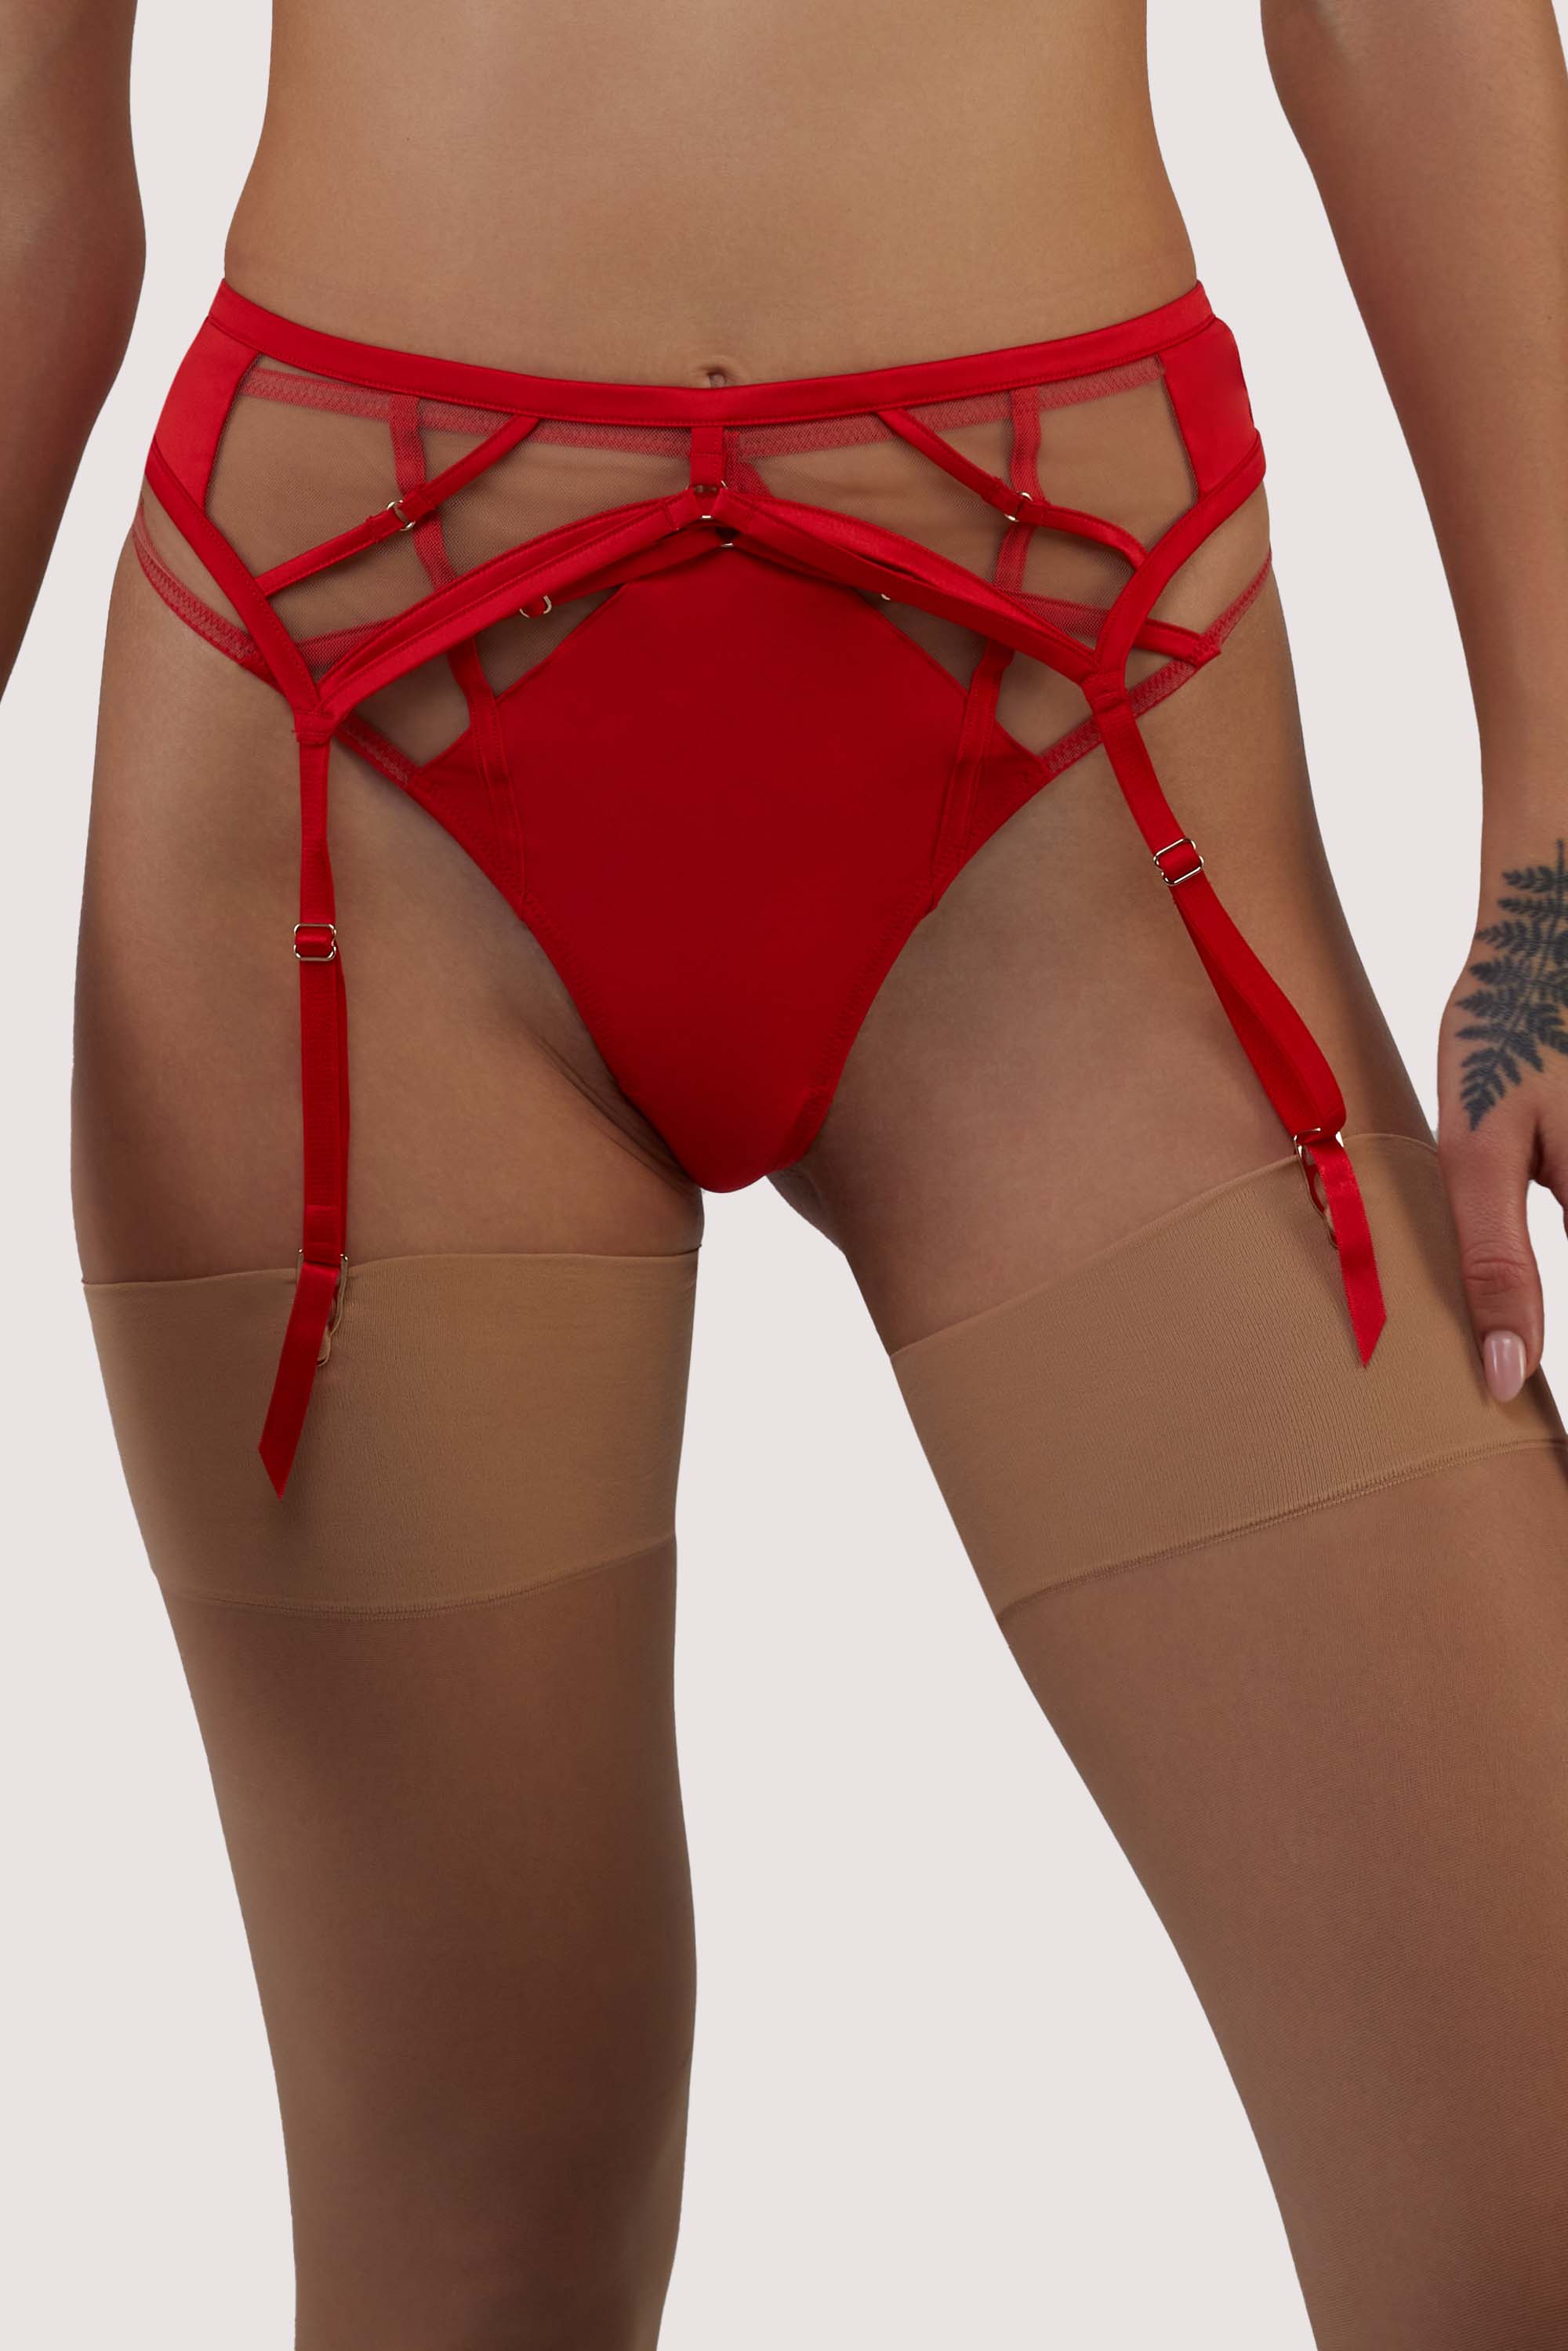 Ramona red Strap Detail Illusion Mesh Suspender 24